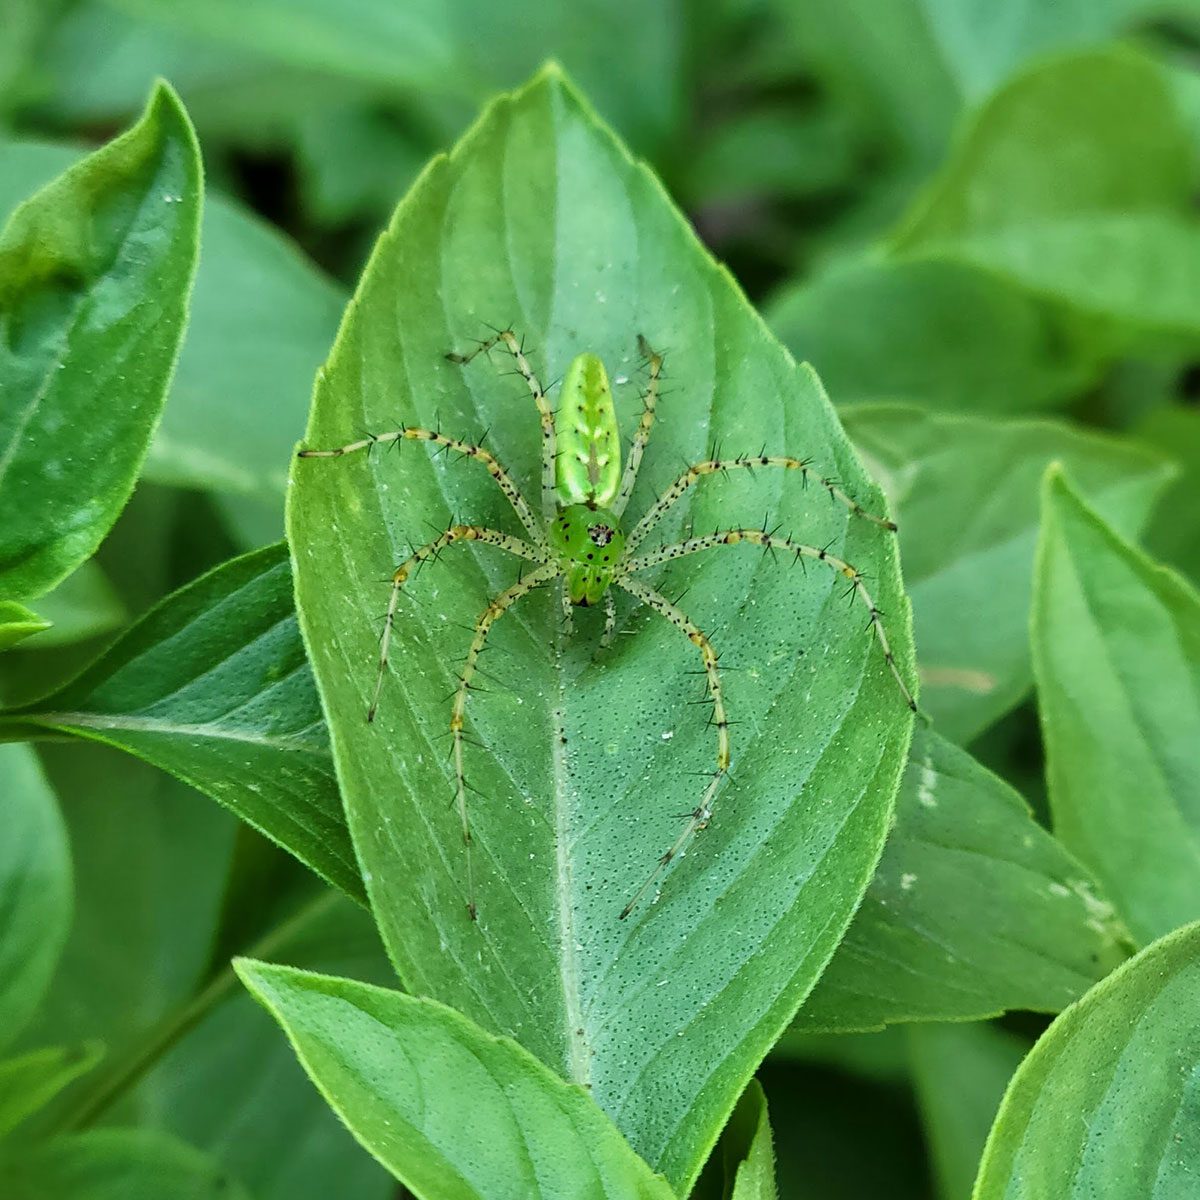 Lynx Spider on a green leaf